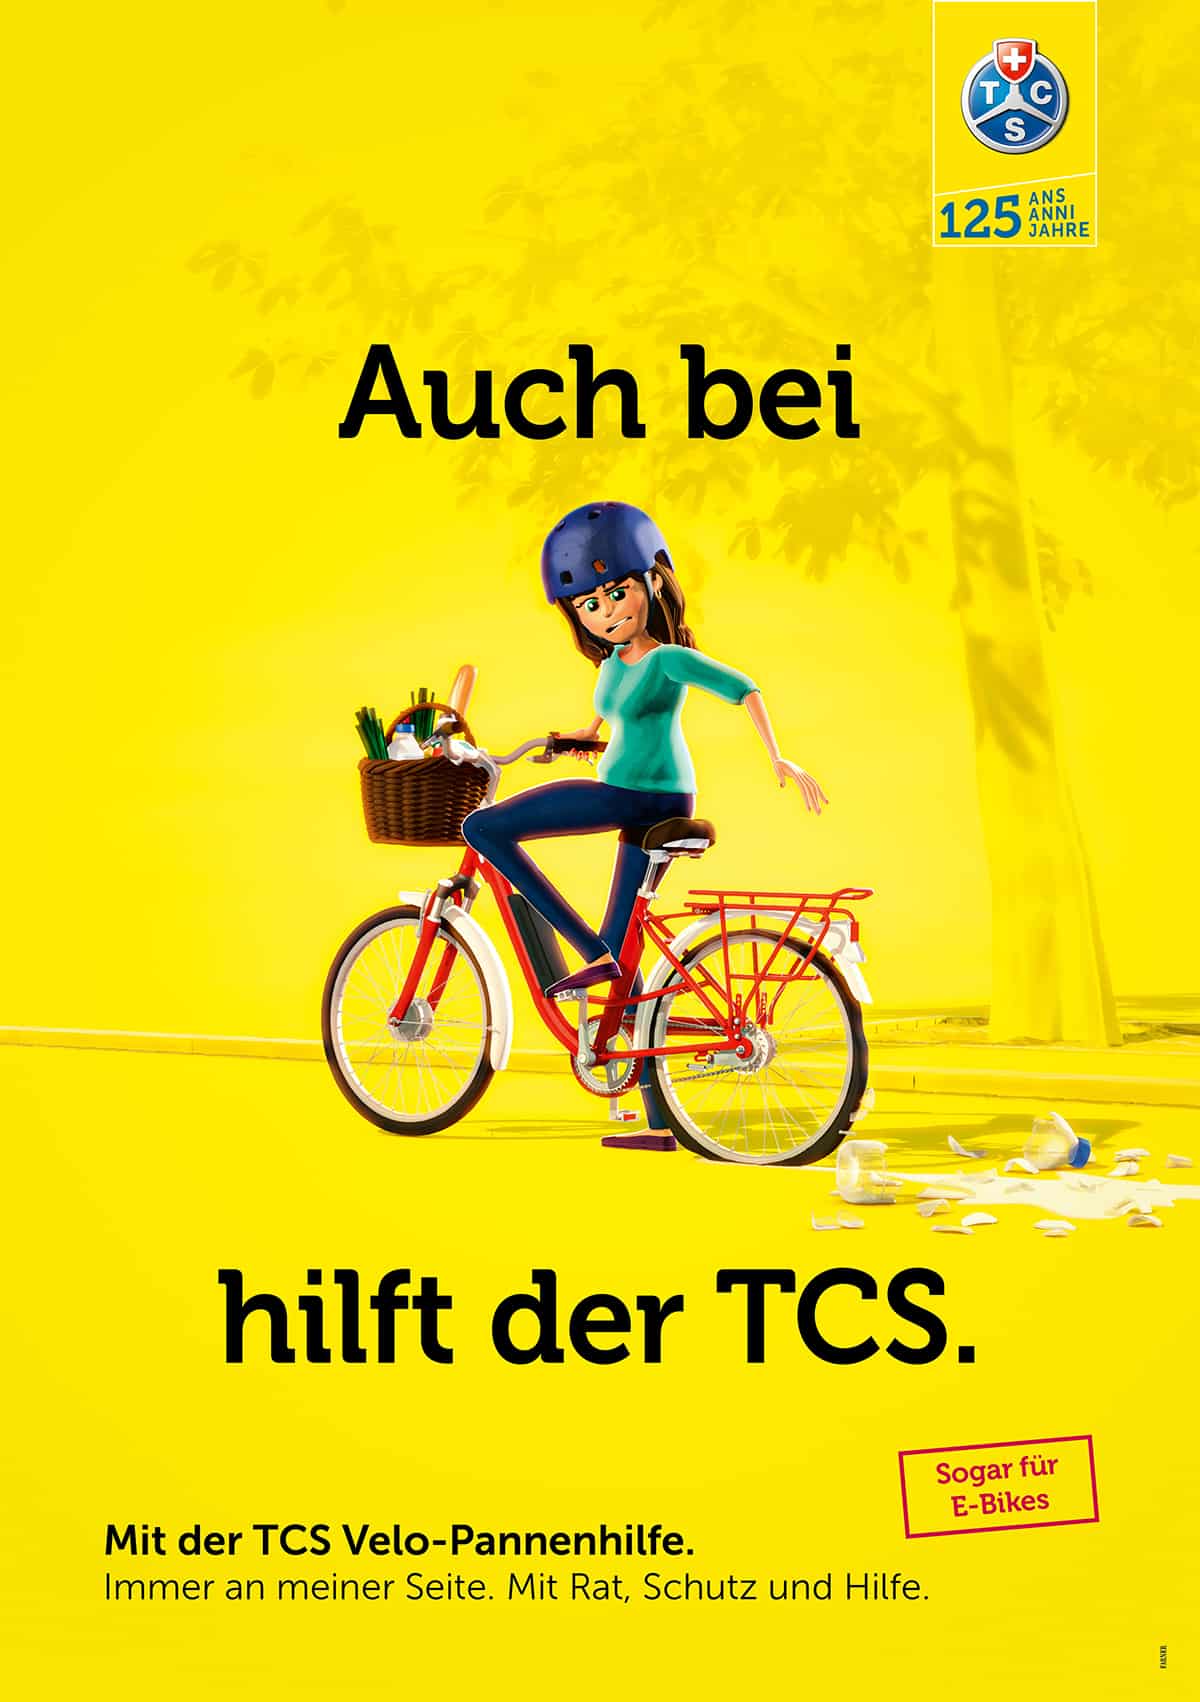 TCS-Kampagne von Farner